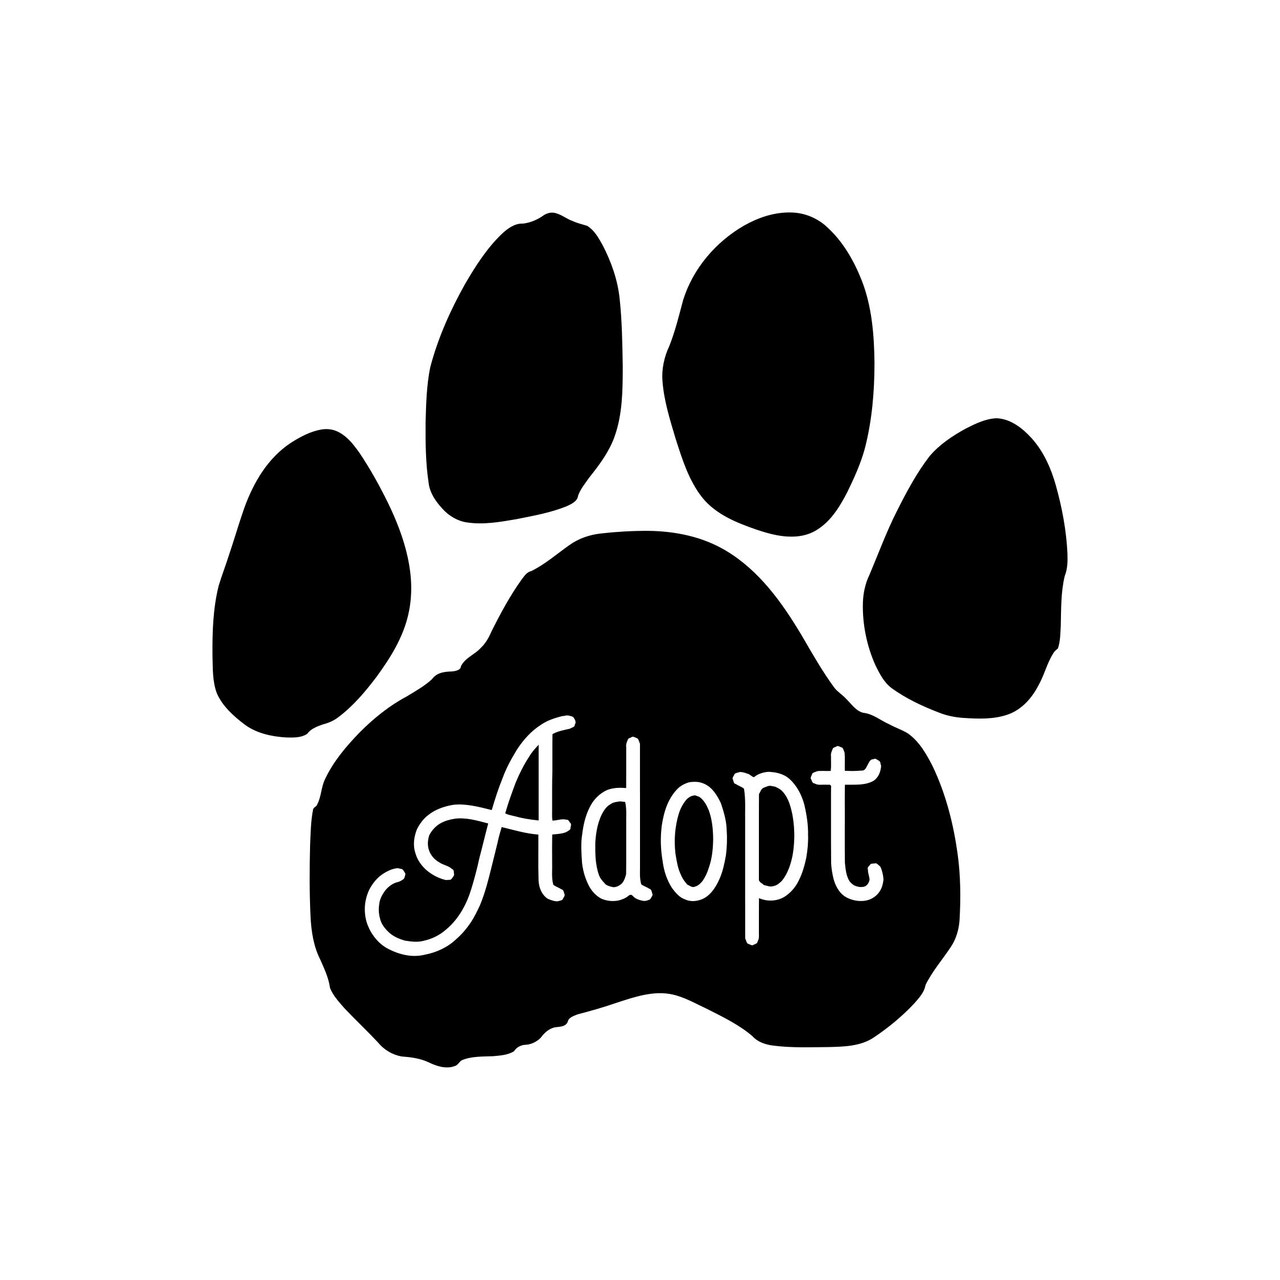 ADOPT PAWPRINT Vinyl Sticker - Dog Cat Paw Foster Rescue Puppy Kitten - Die Cut Decal